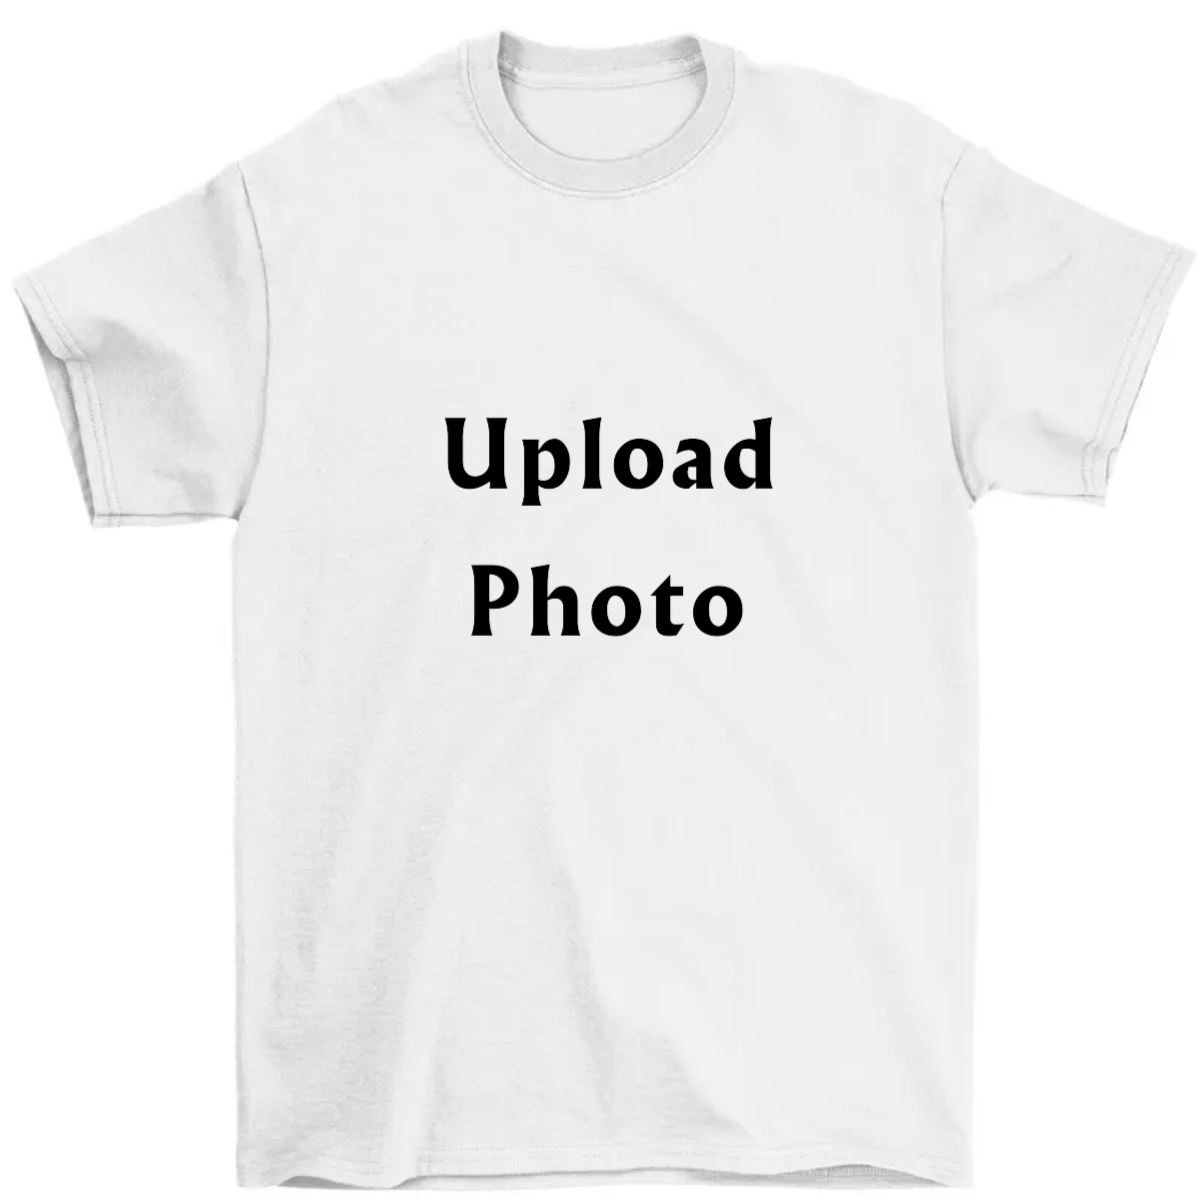 Upload Photo Personalised Shirt